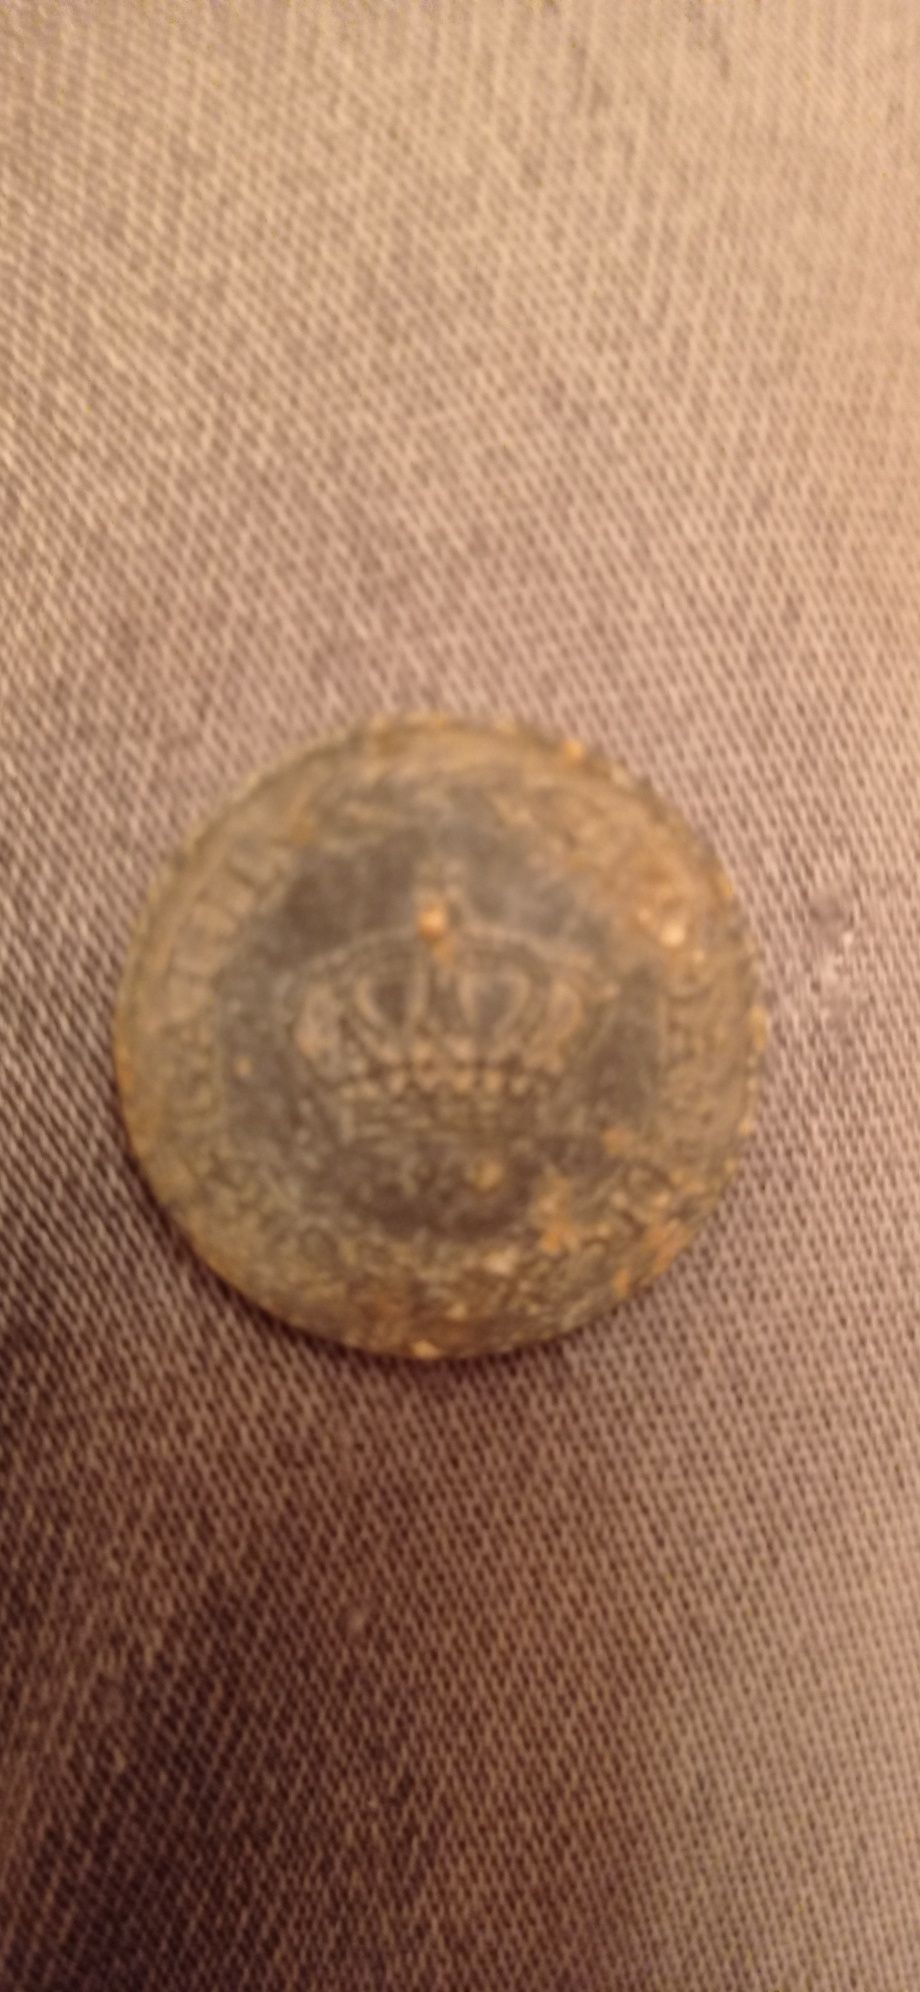 Lot de 2 monede foarte vechi